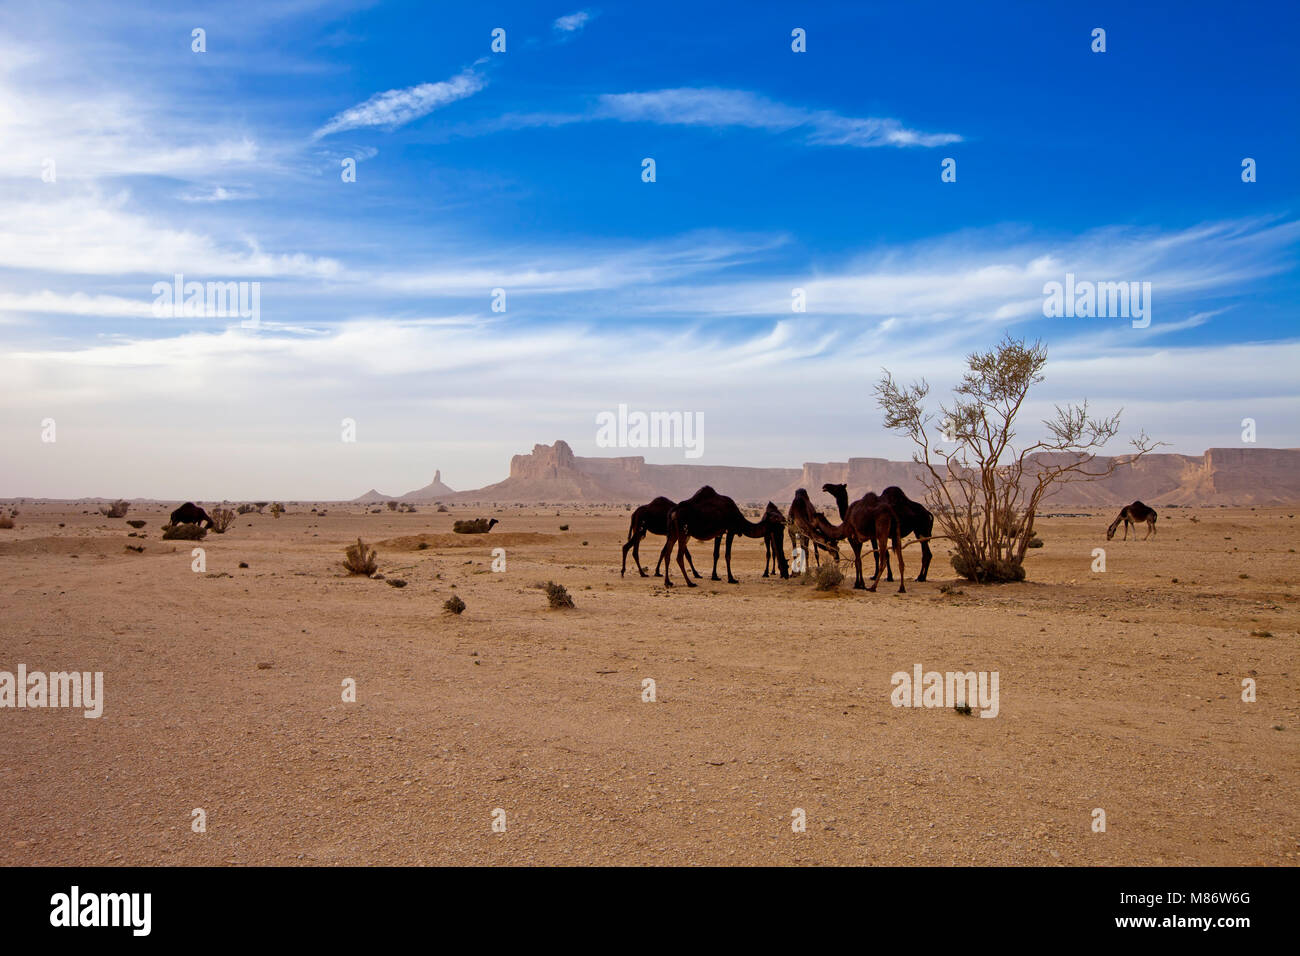 Kamele in der Wüste, Riad, Saudi-Arabien Stockfoto